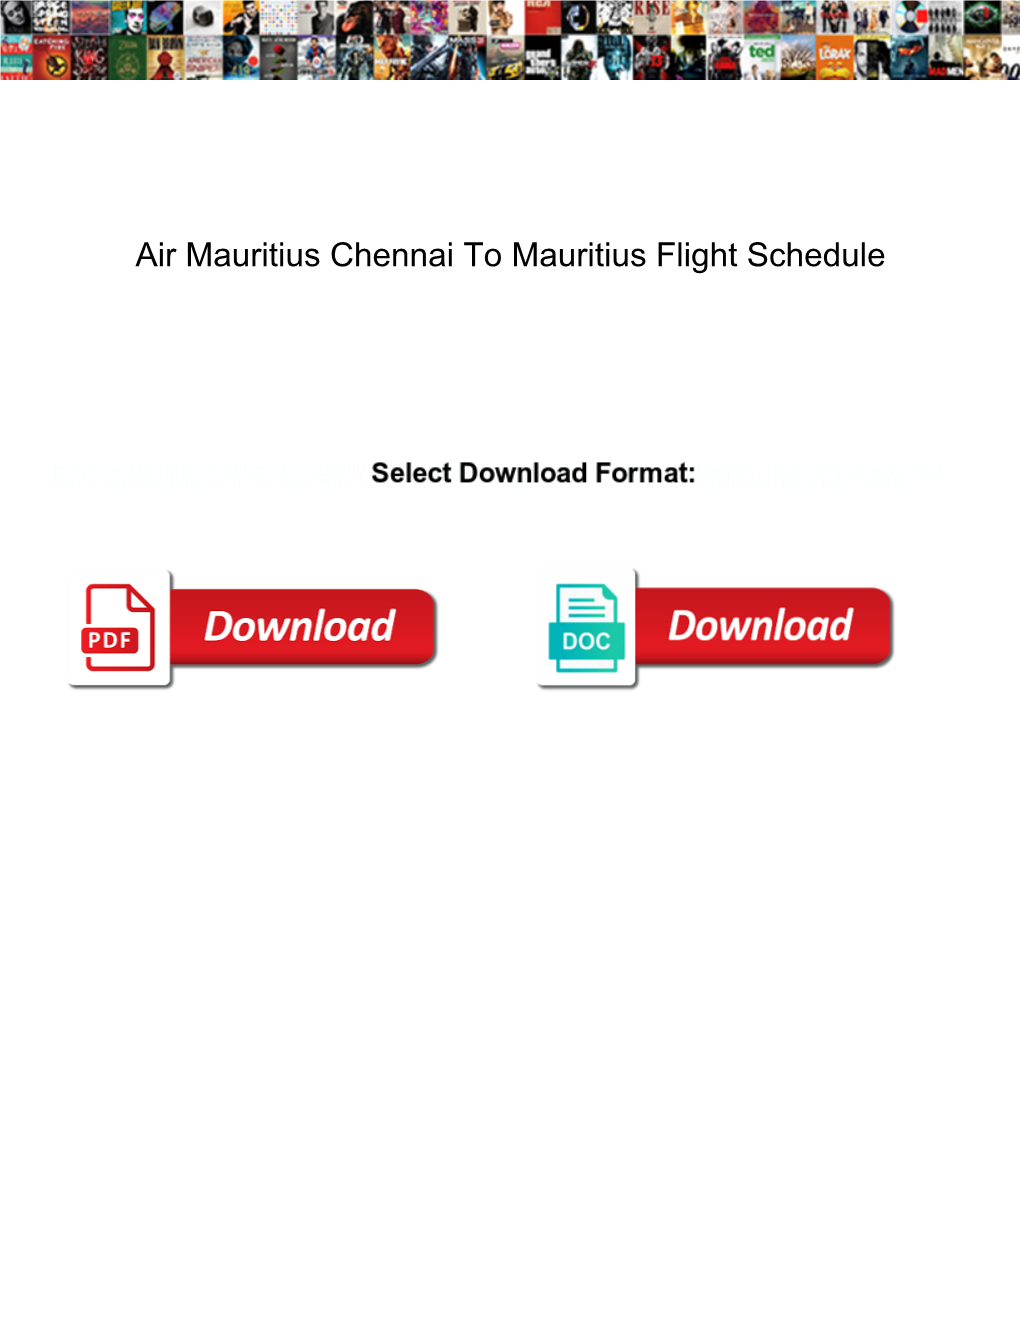 Air Mauritius Chennai to Mauritius Flight Schedule